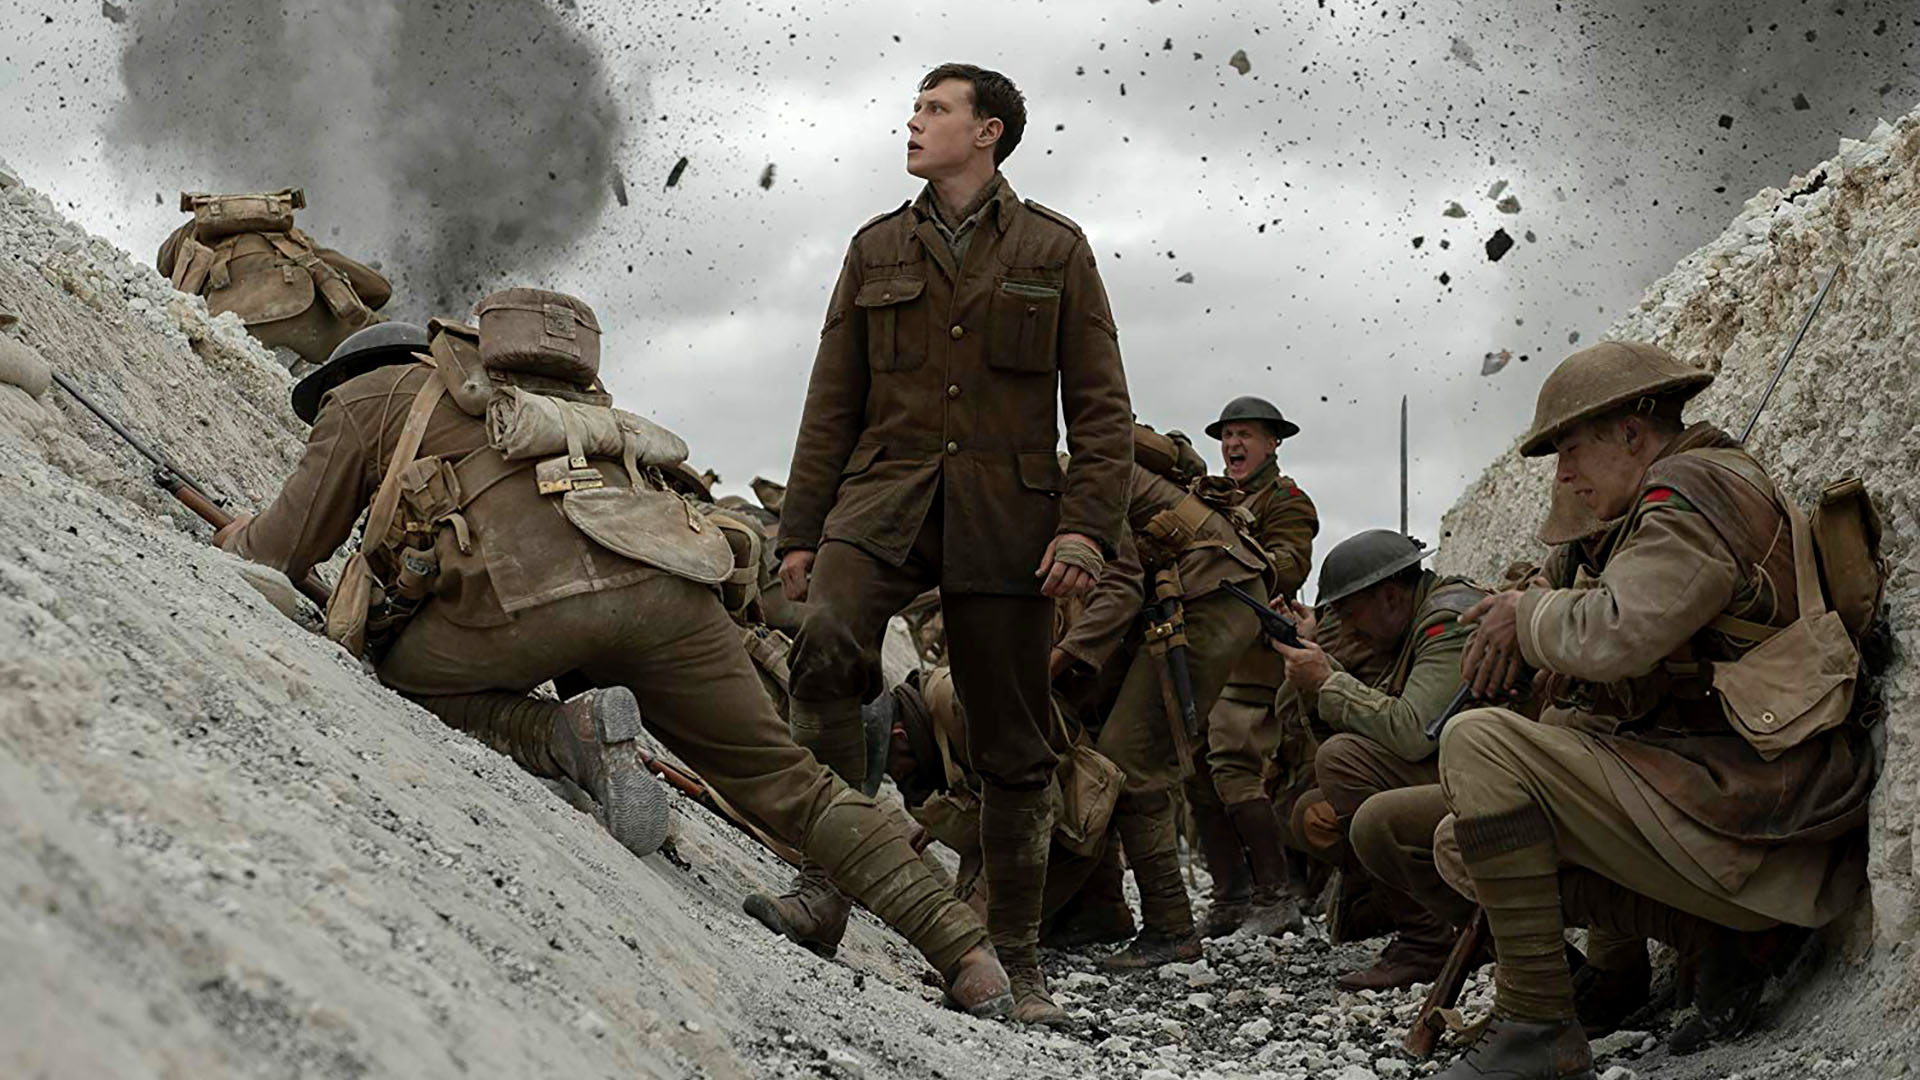 Dean-Charles Chapman y George MacKay protagonizan esta película bélica sobre la Primera Guerra Mundial.